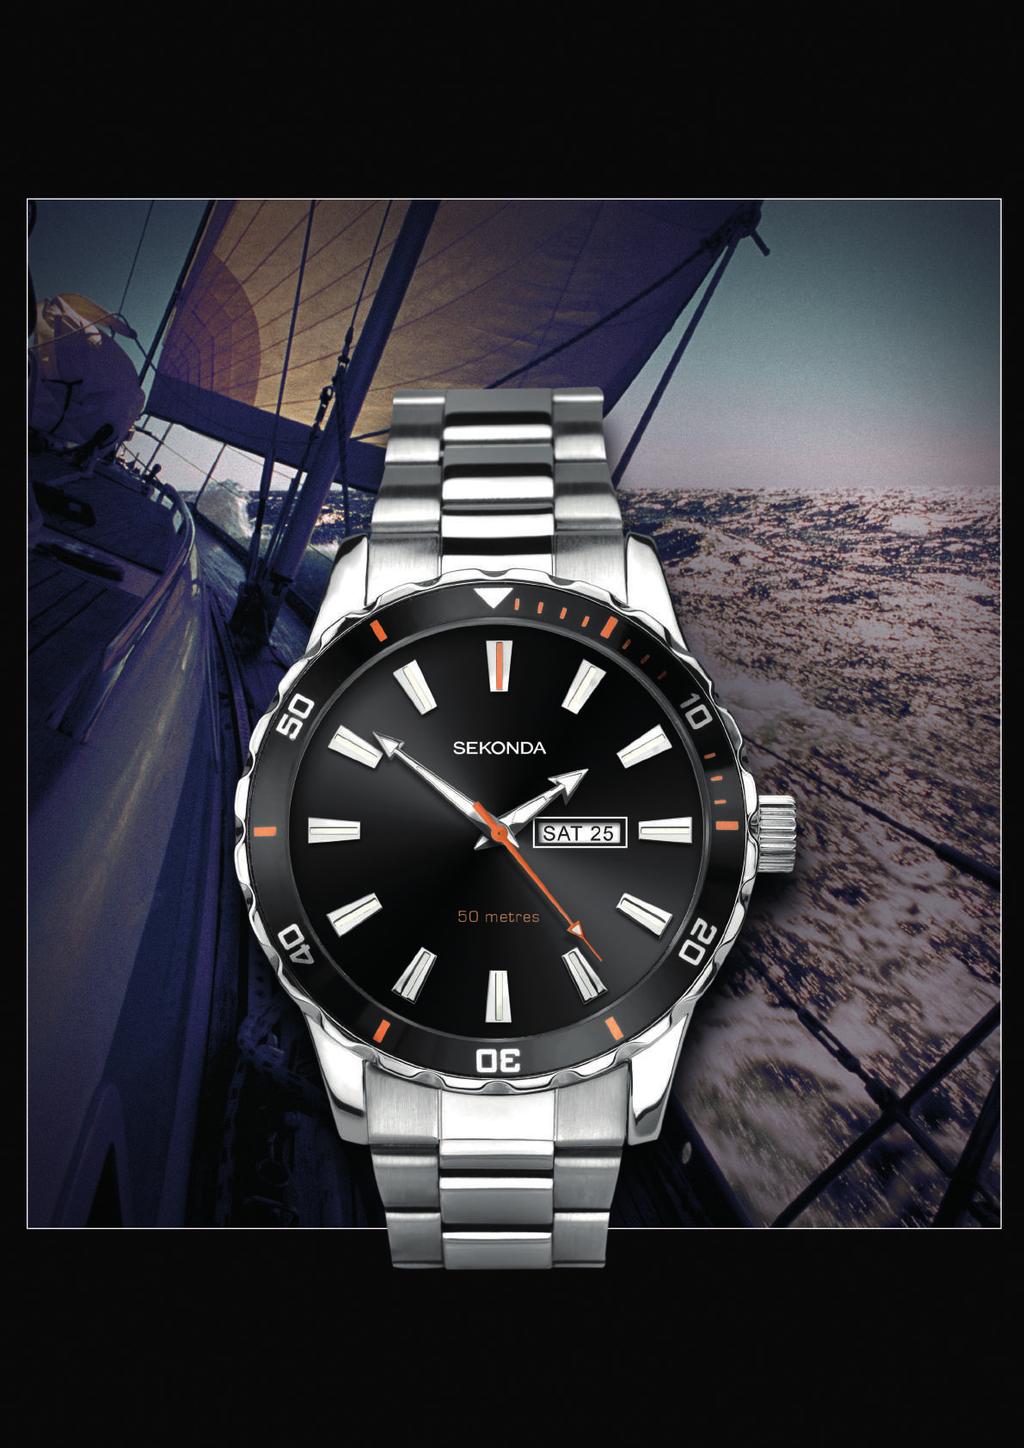 Chiếc đồng hồ này có giao diện ngày/thứ và khả năng chống nước ở độ sâu tới 50m. Bảo hành 2 năm. 세콘다의 야심작, 남성 아날로그 스포츠 시계를 소개합니다.